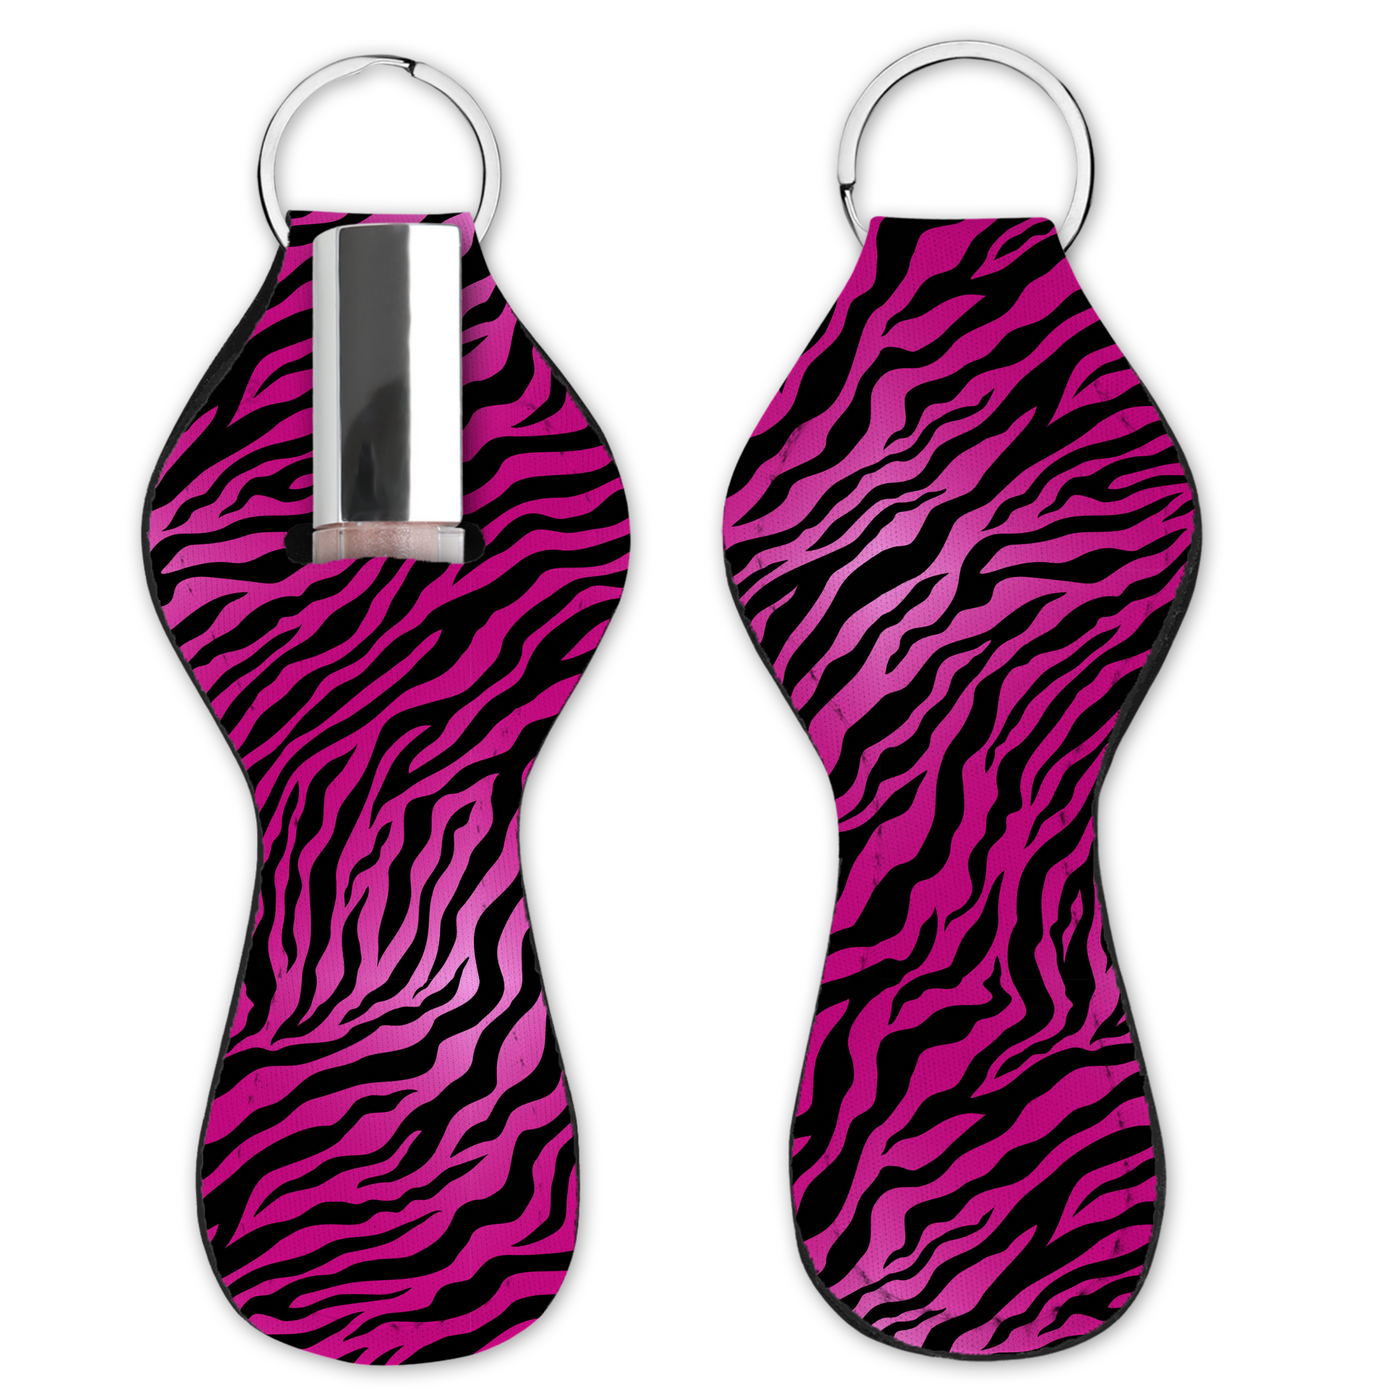 Lip Gloss Holder - Tiger Dark Pink